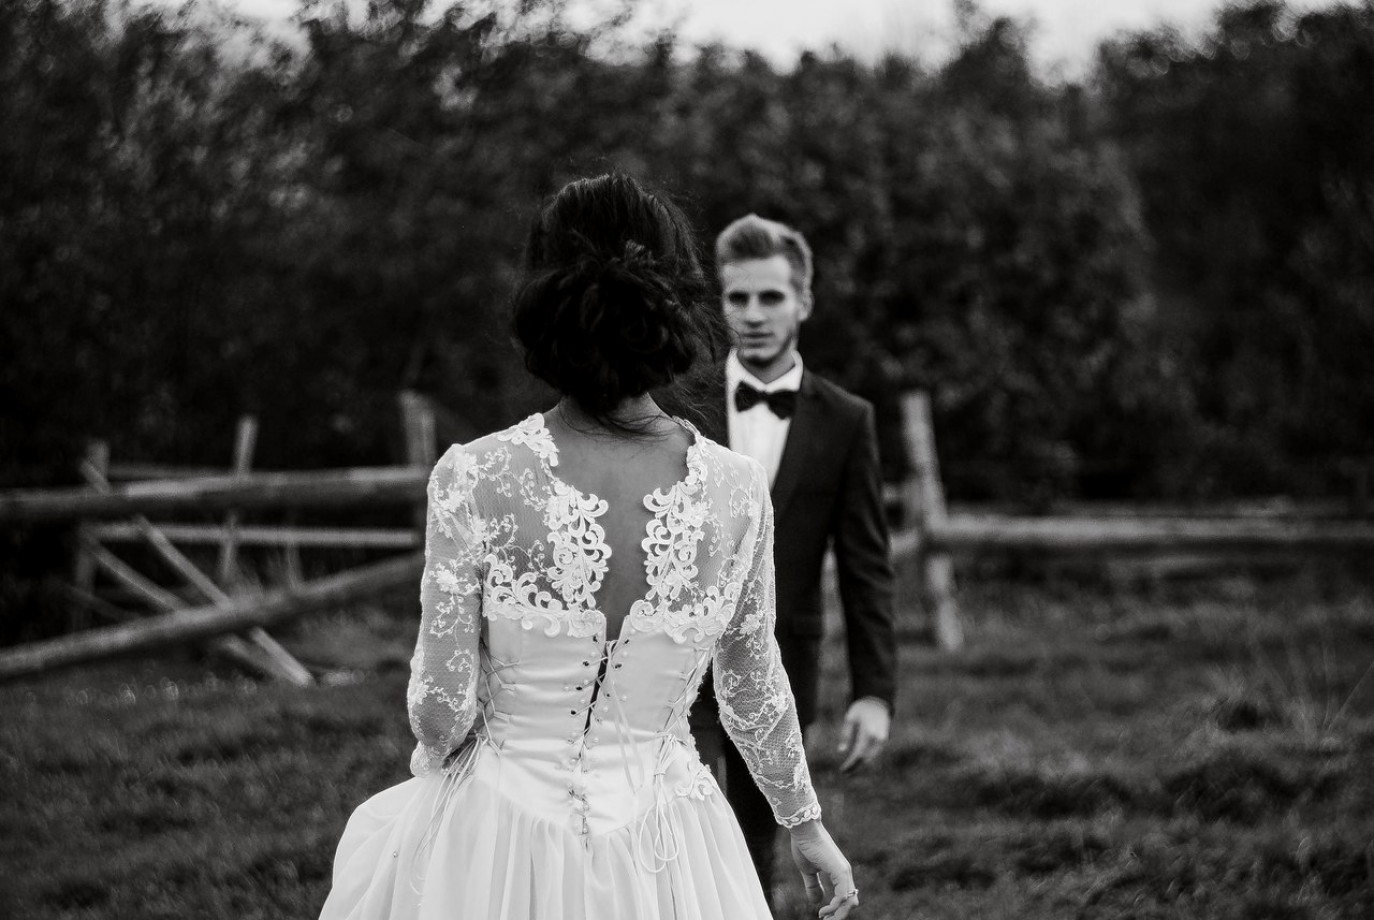 zdjęcia wroclaw fotograf andriy-kravets portfolio zdjecia slubne inspiracje wesele plener slubny sesja slubna